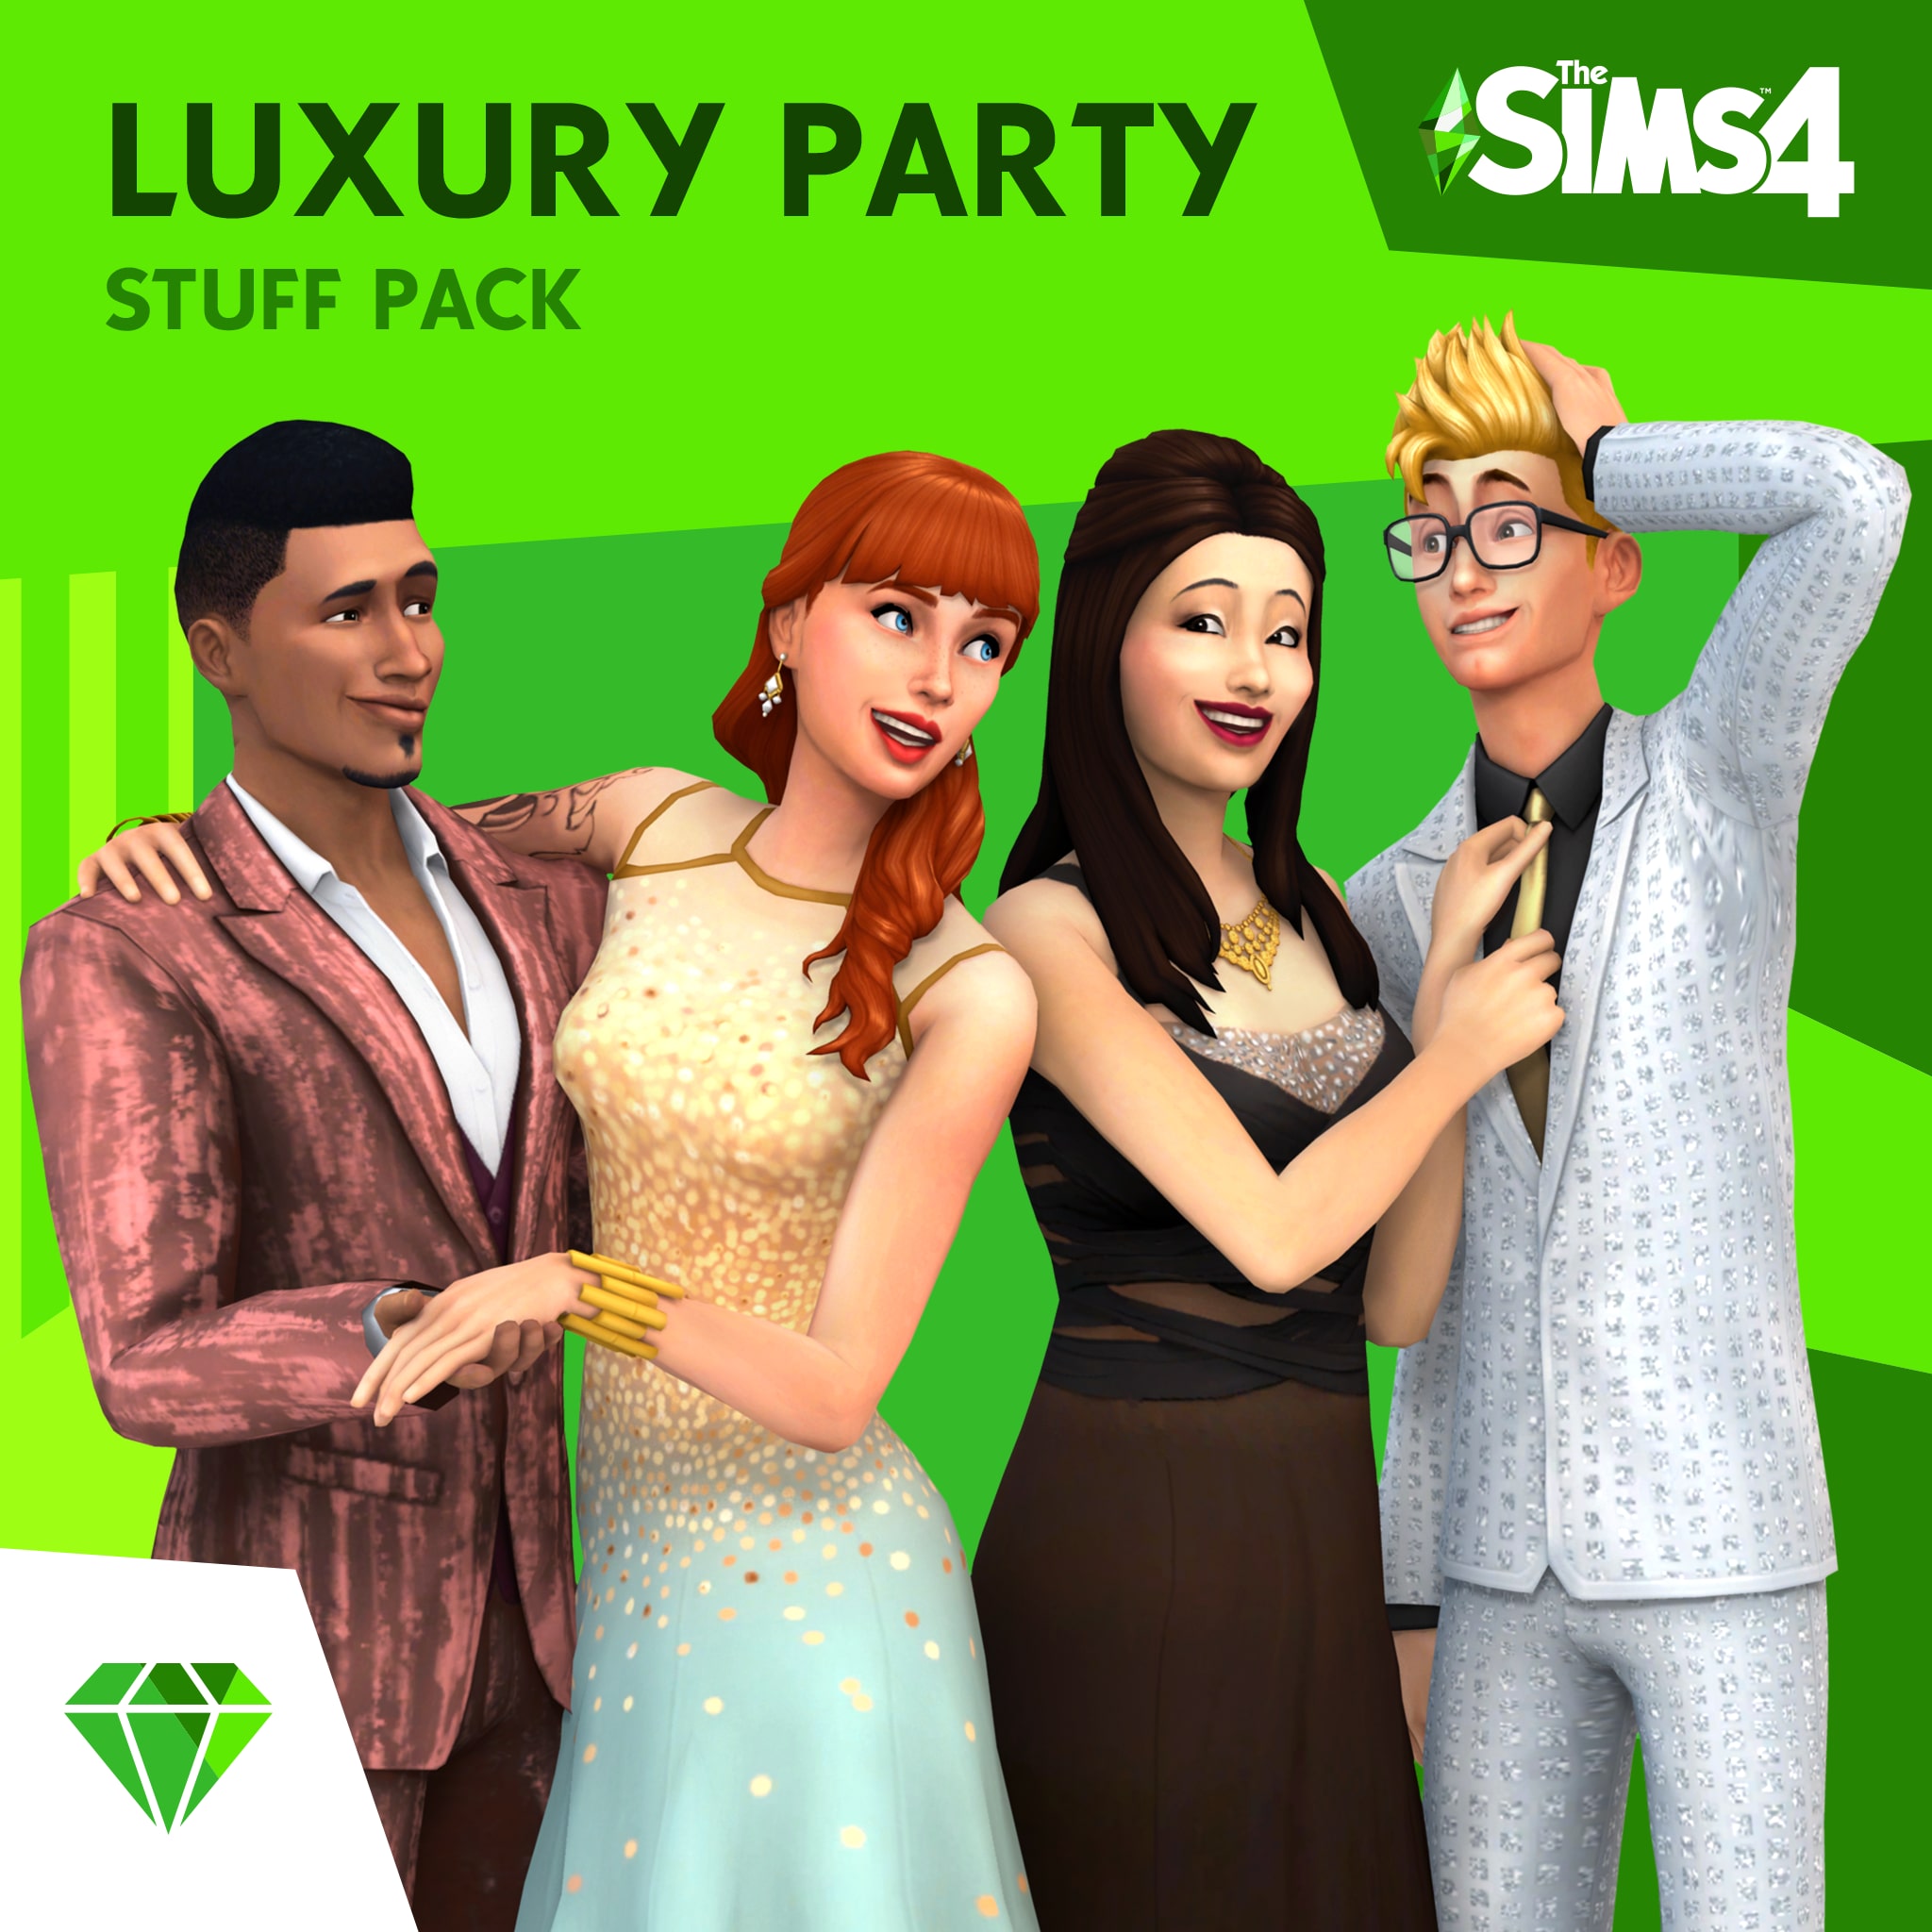 The Sims™ 4 Festa Luxuosa Coleção de Objetos